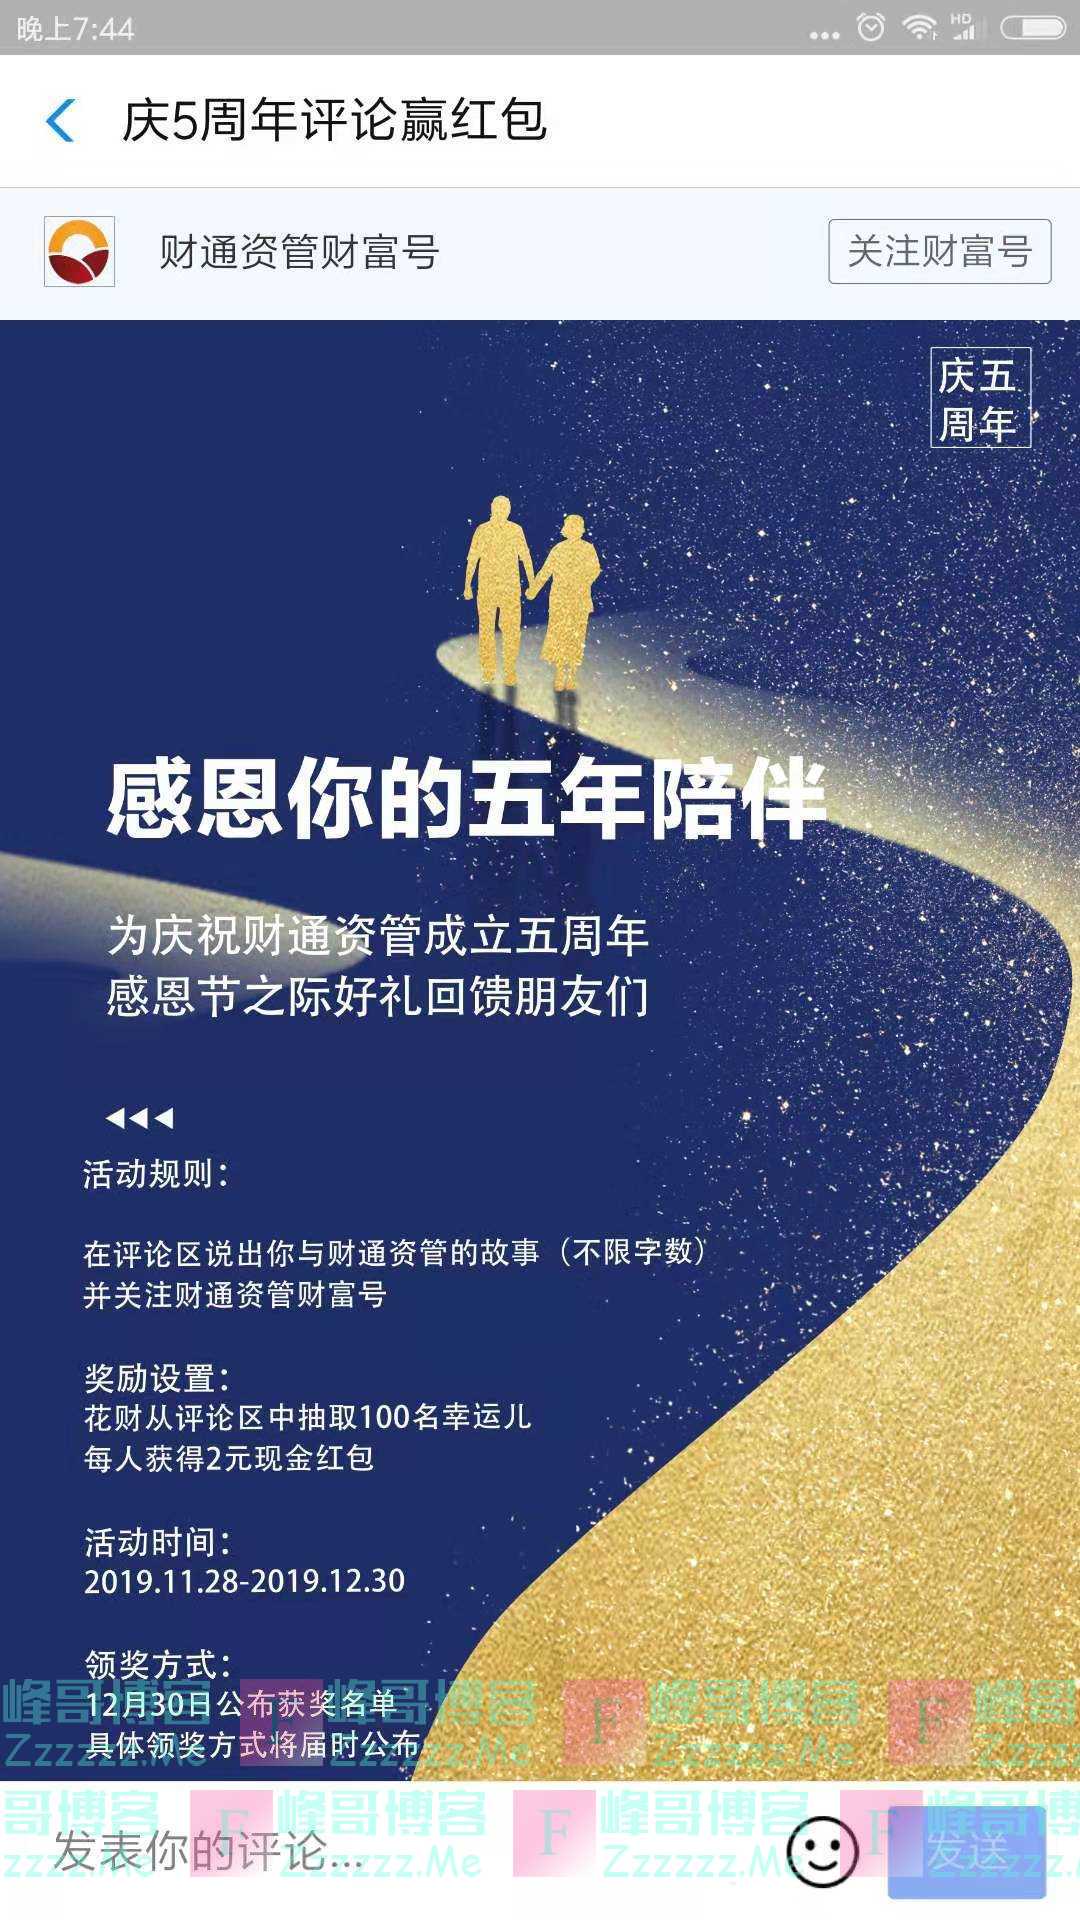 融通基金财富号庆5周年评论赢红包（截止12月30日）